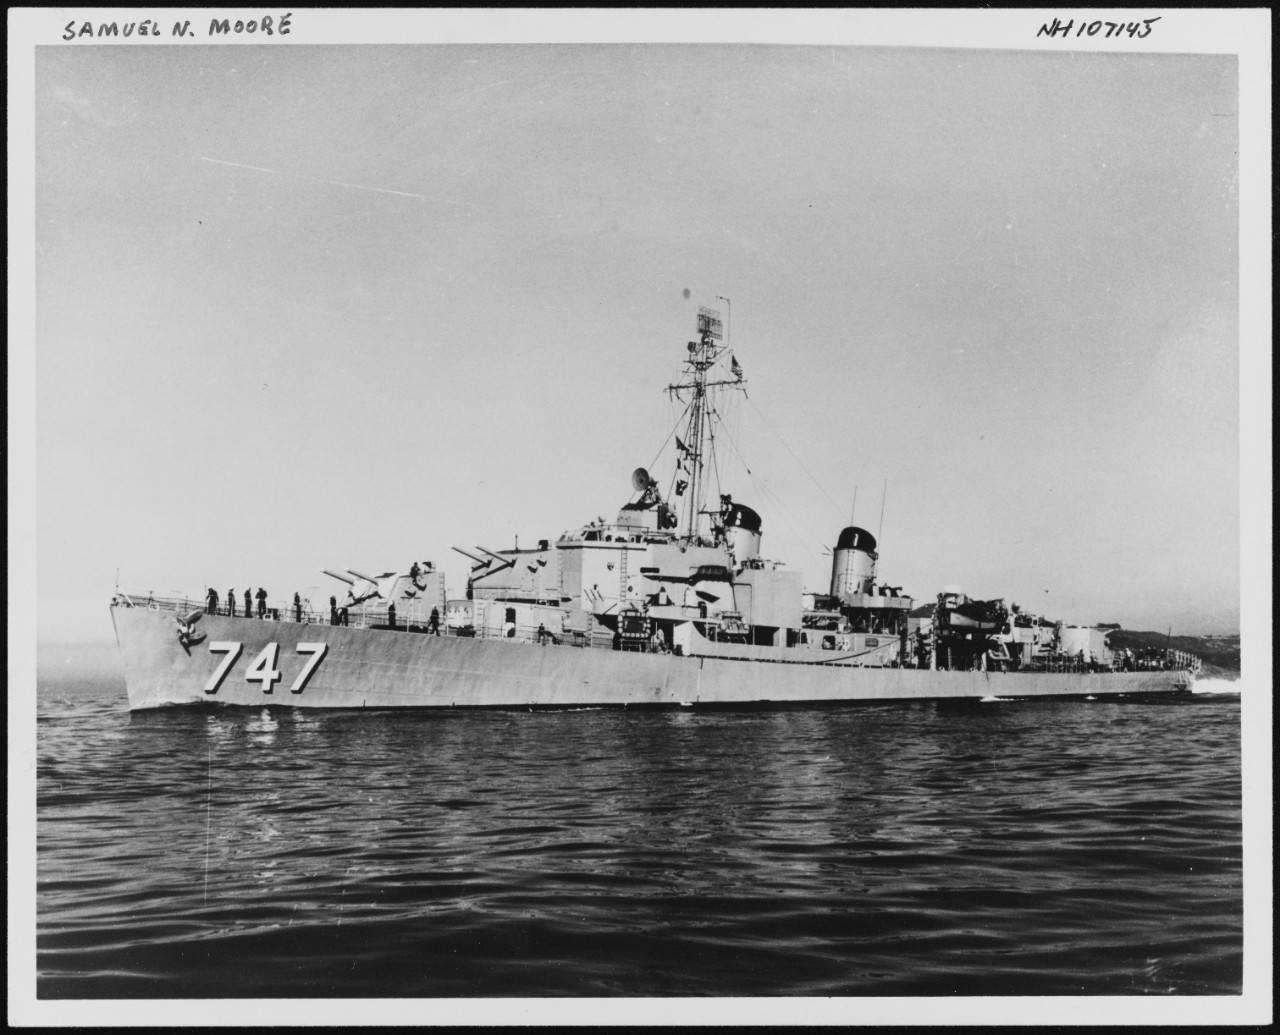 Photo #: NH 107145  USS Samuel N. Moore